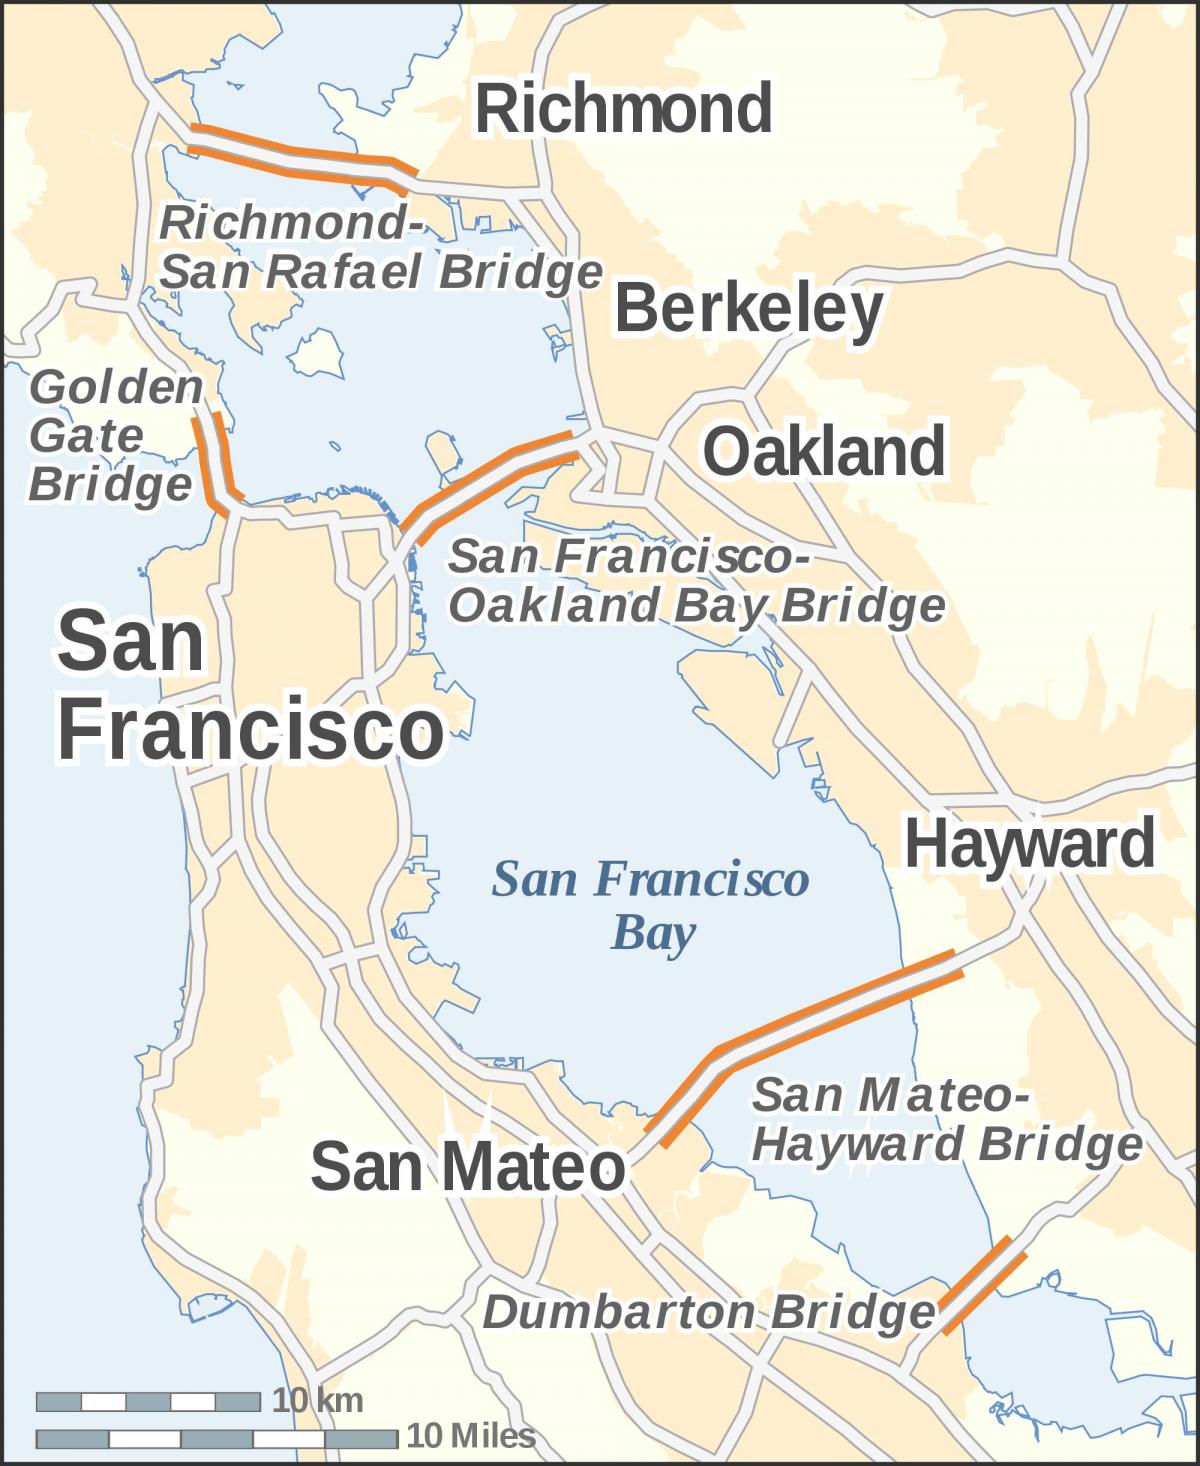 Žemėlapis San Francisko tiltų